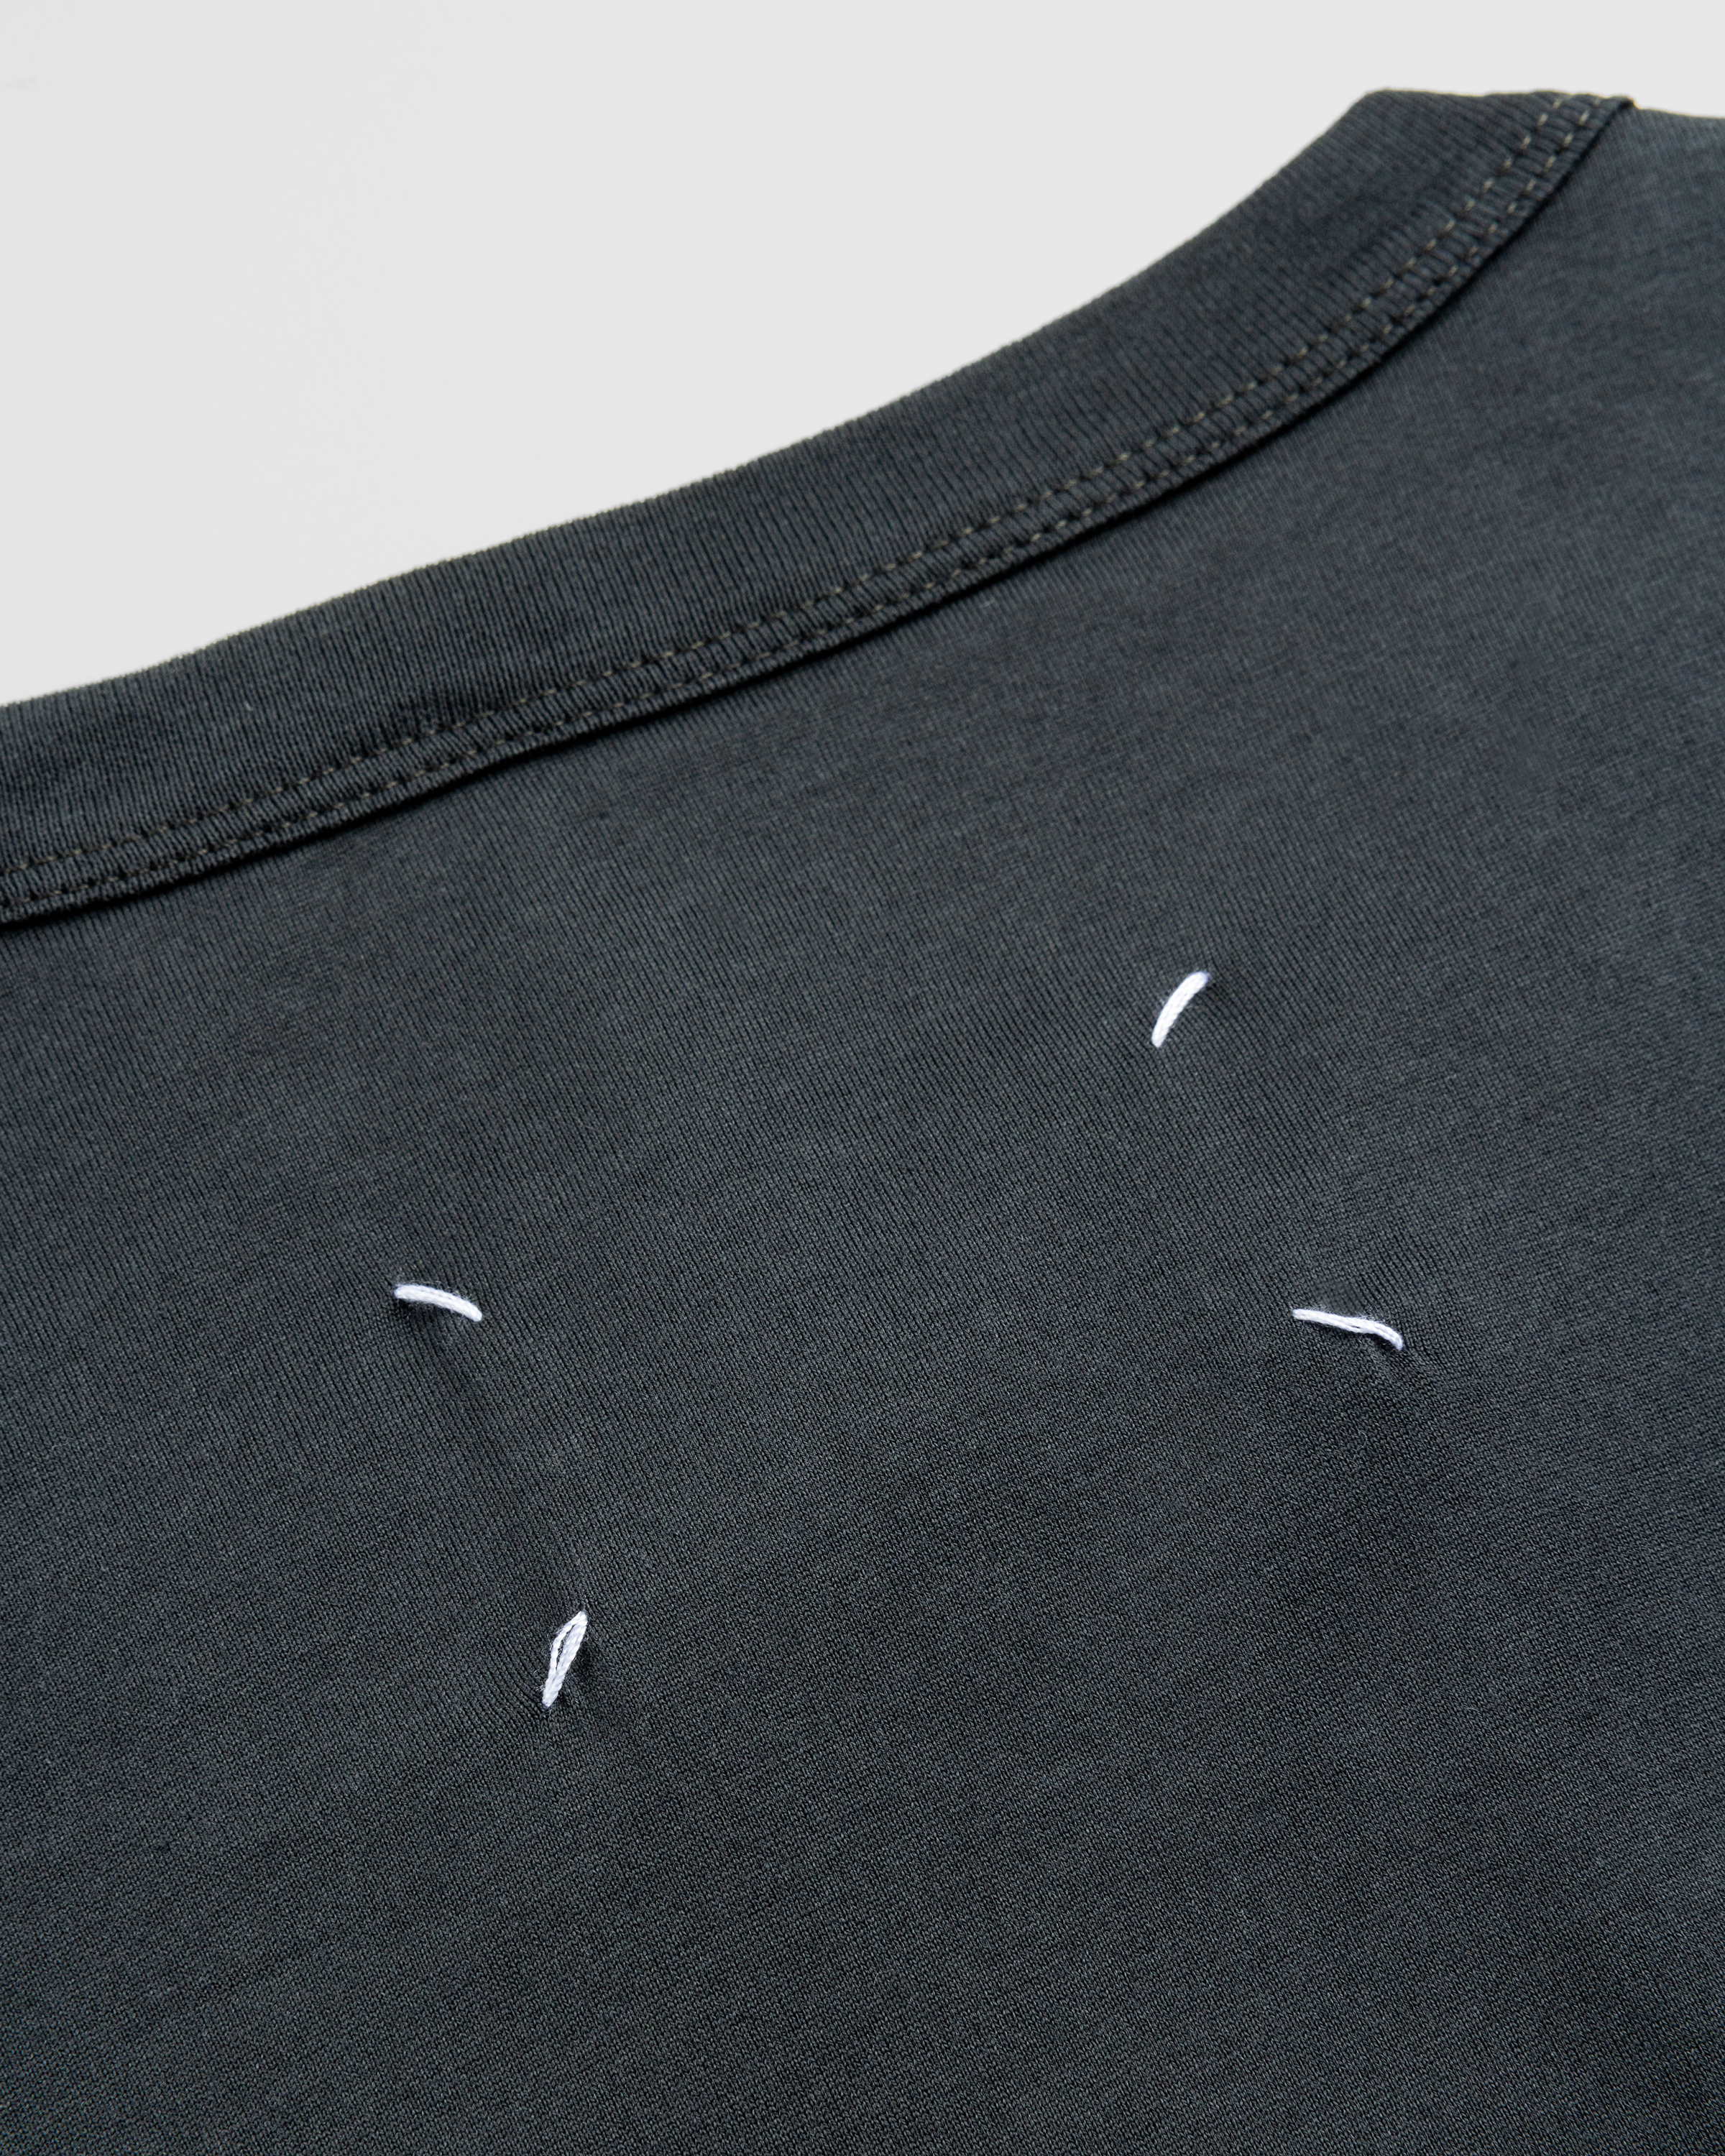 Maison Margiela – Distorted Logo T-Shirt Washed Black - Tops - Black - Image 6